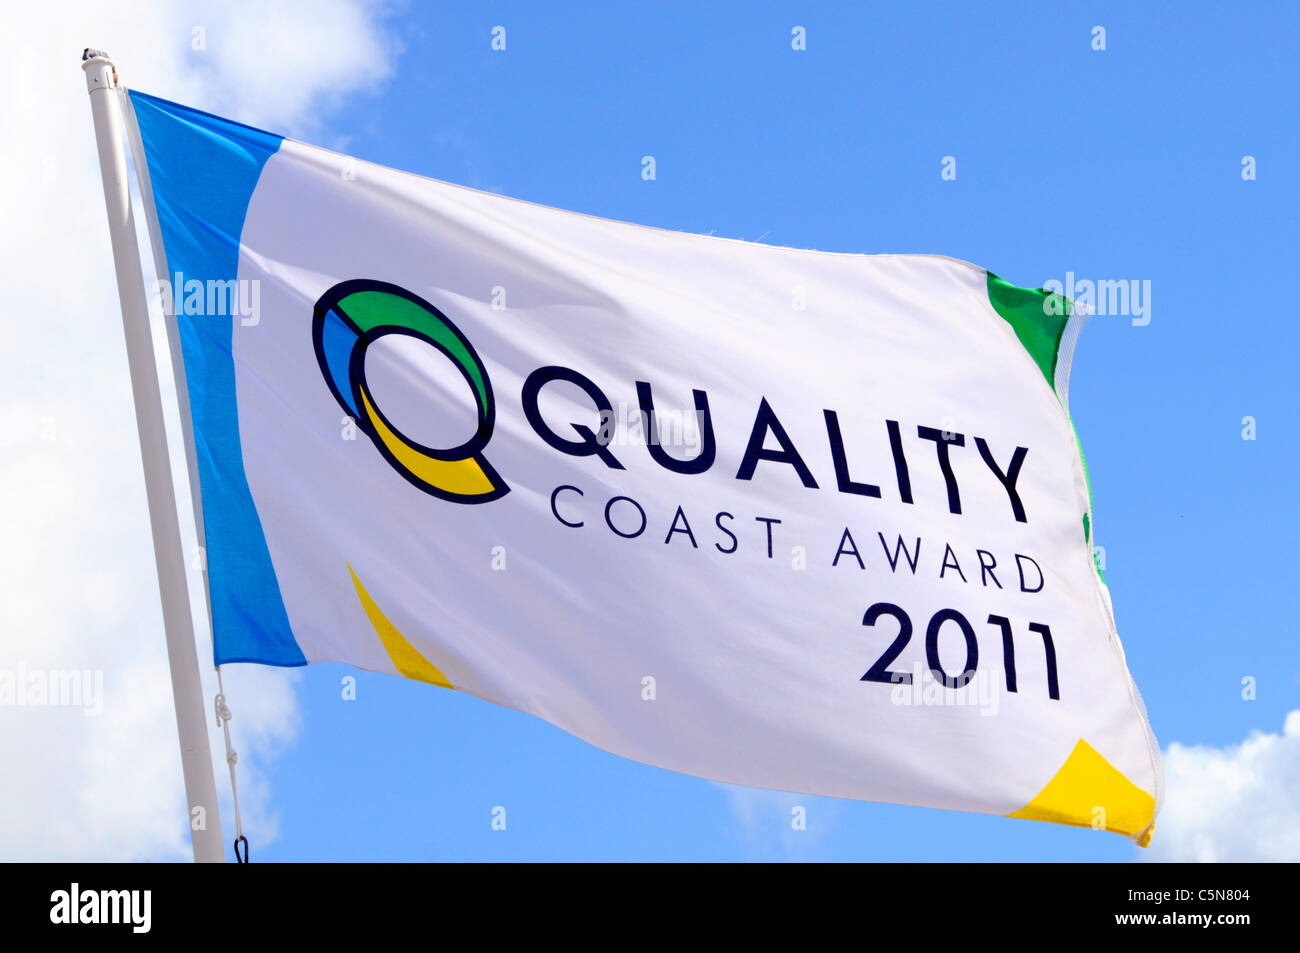 Qualität Küste Großbritannien ordentlich Award Flagge auf Leigh-on-Sea Strand Thames Estuary Essex England UK ein Bezirk in der Nähe von Southend on Sea Halten Stockfoto